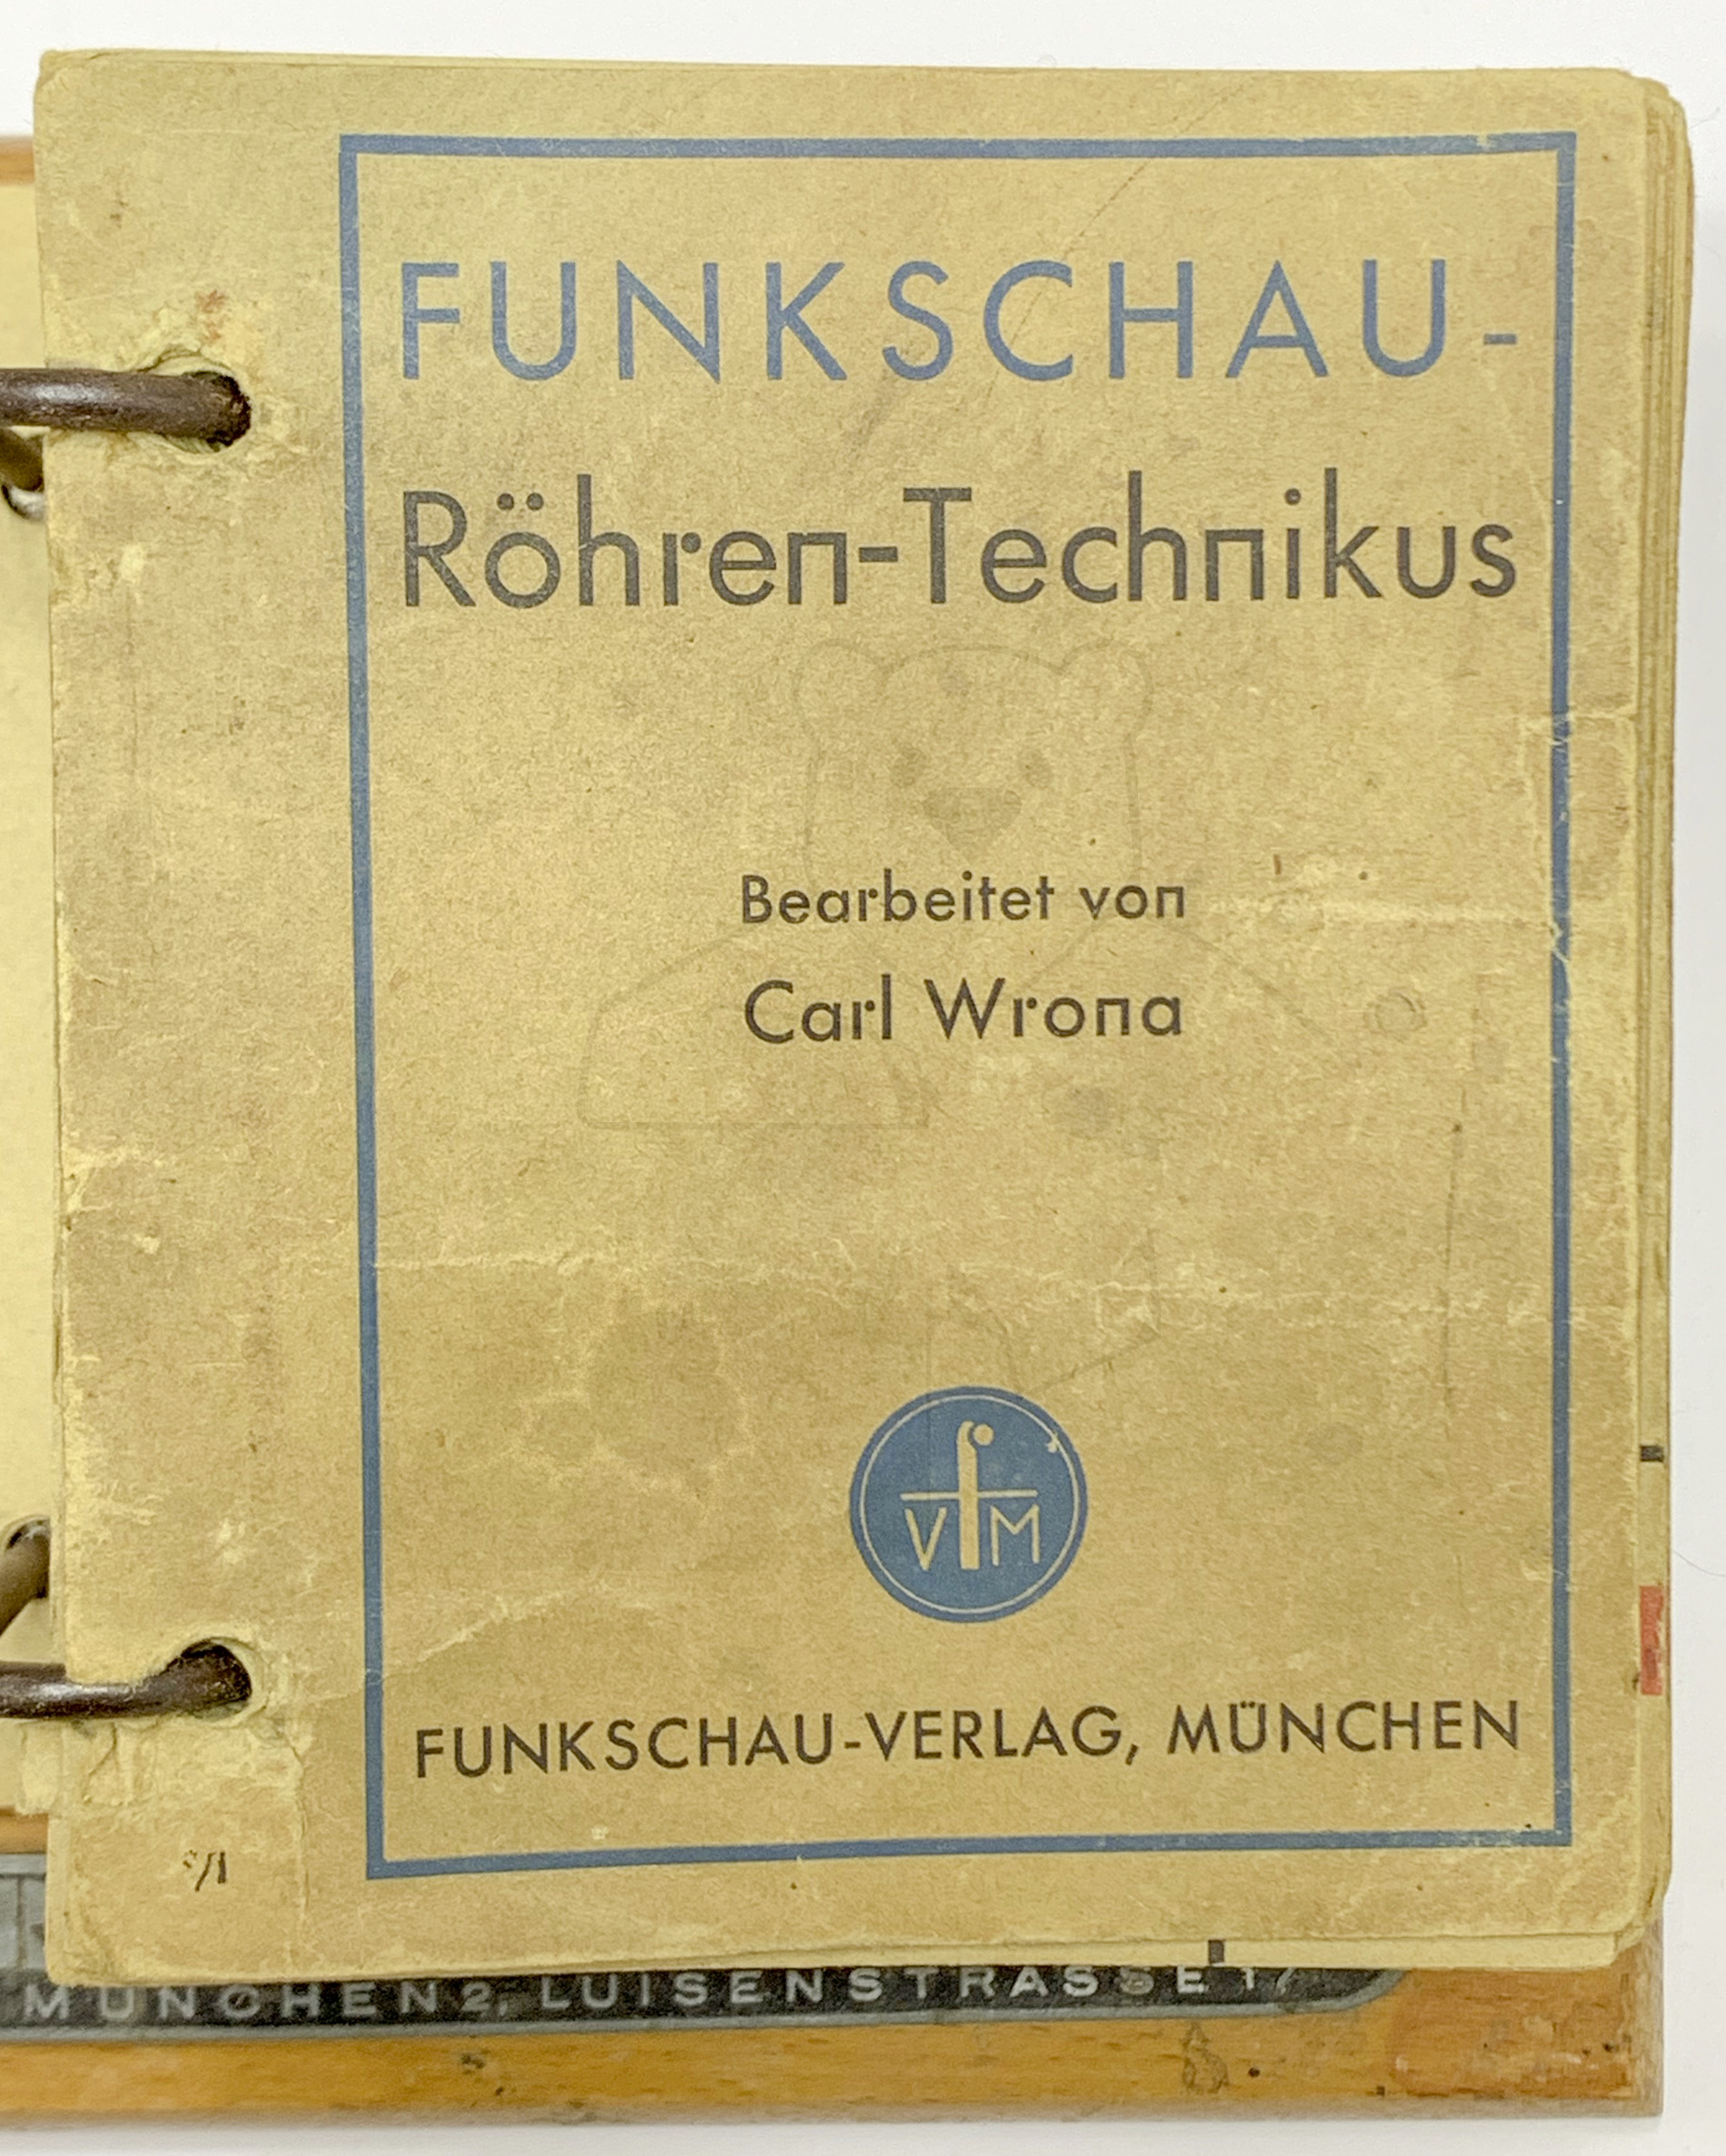 Funkschau Röhren Technikus (1943) - Titelblatt